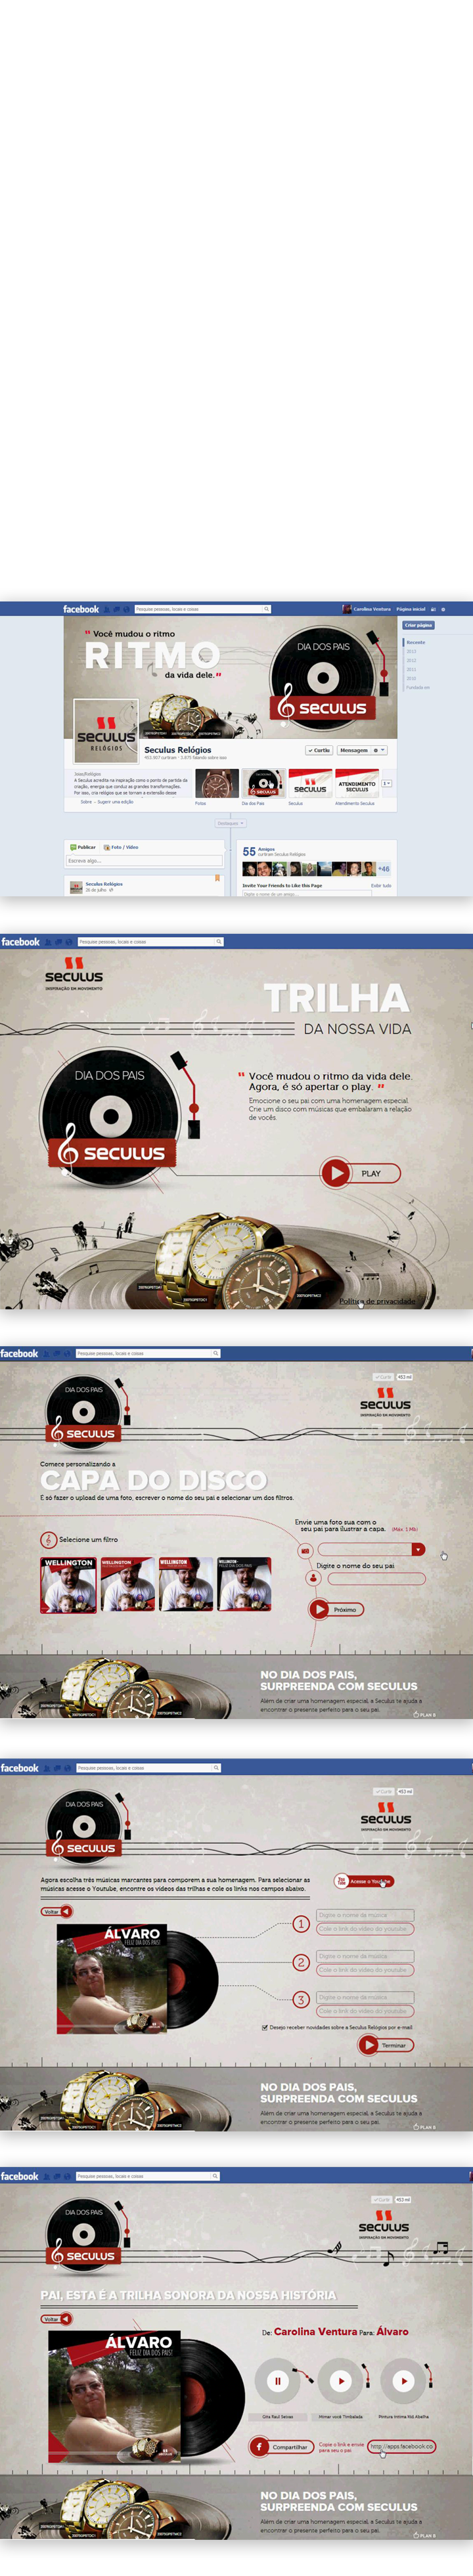 dia dos pais pais seculus relogio marca aplicativo disco vinil musica carolina ventura Brasil Brazil minas gerais